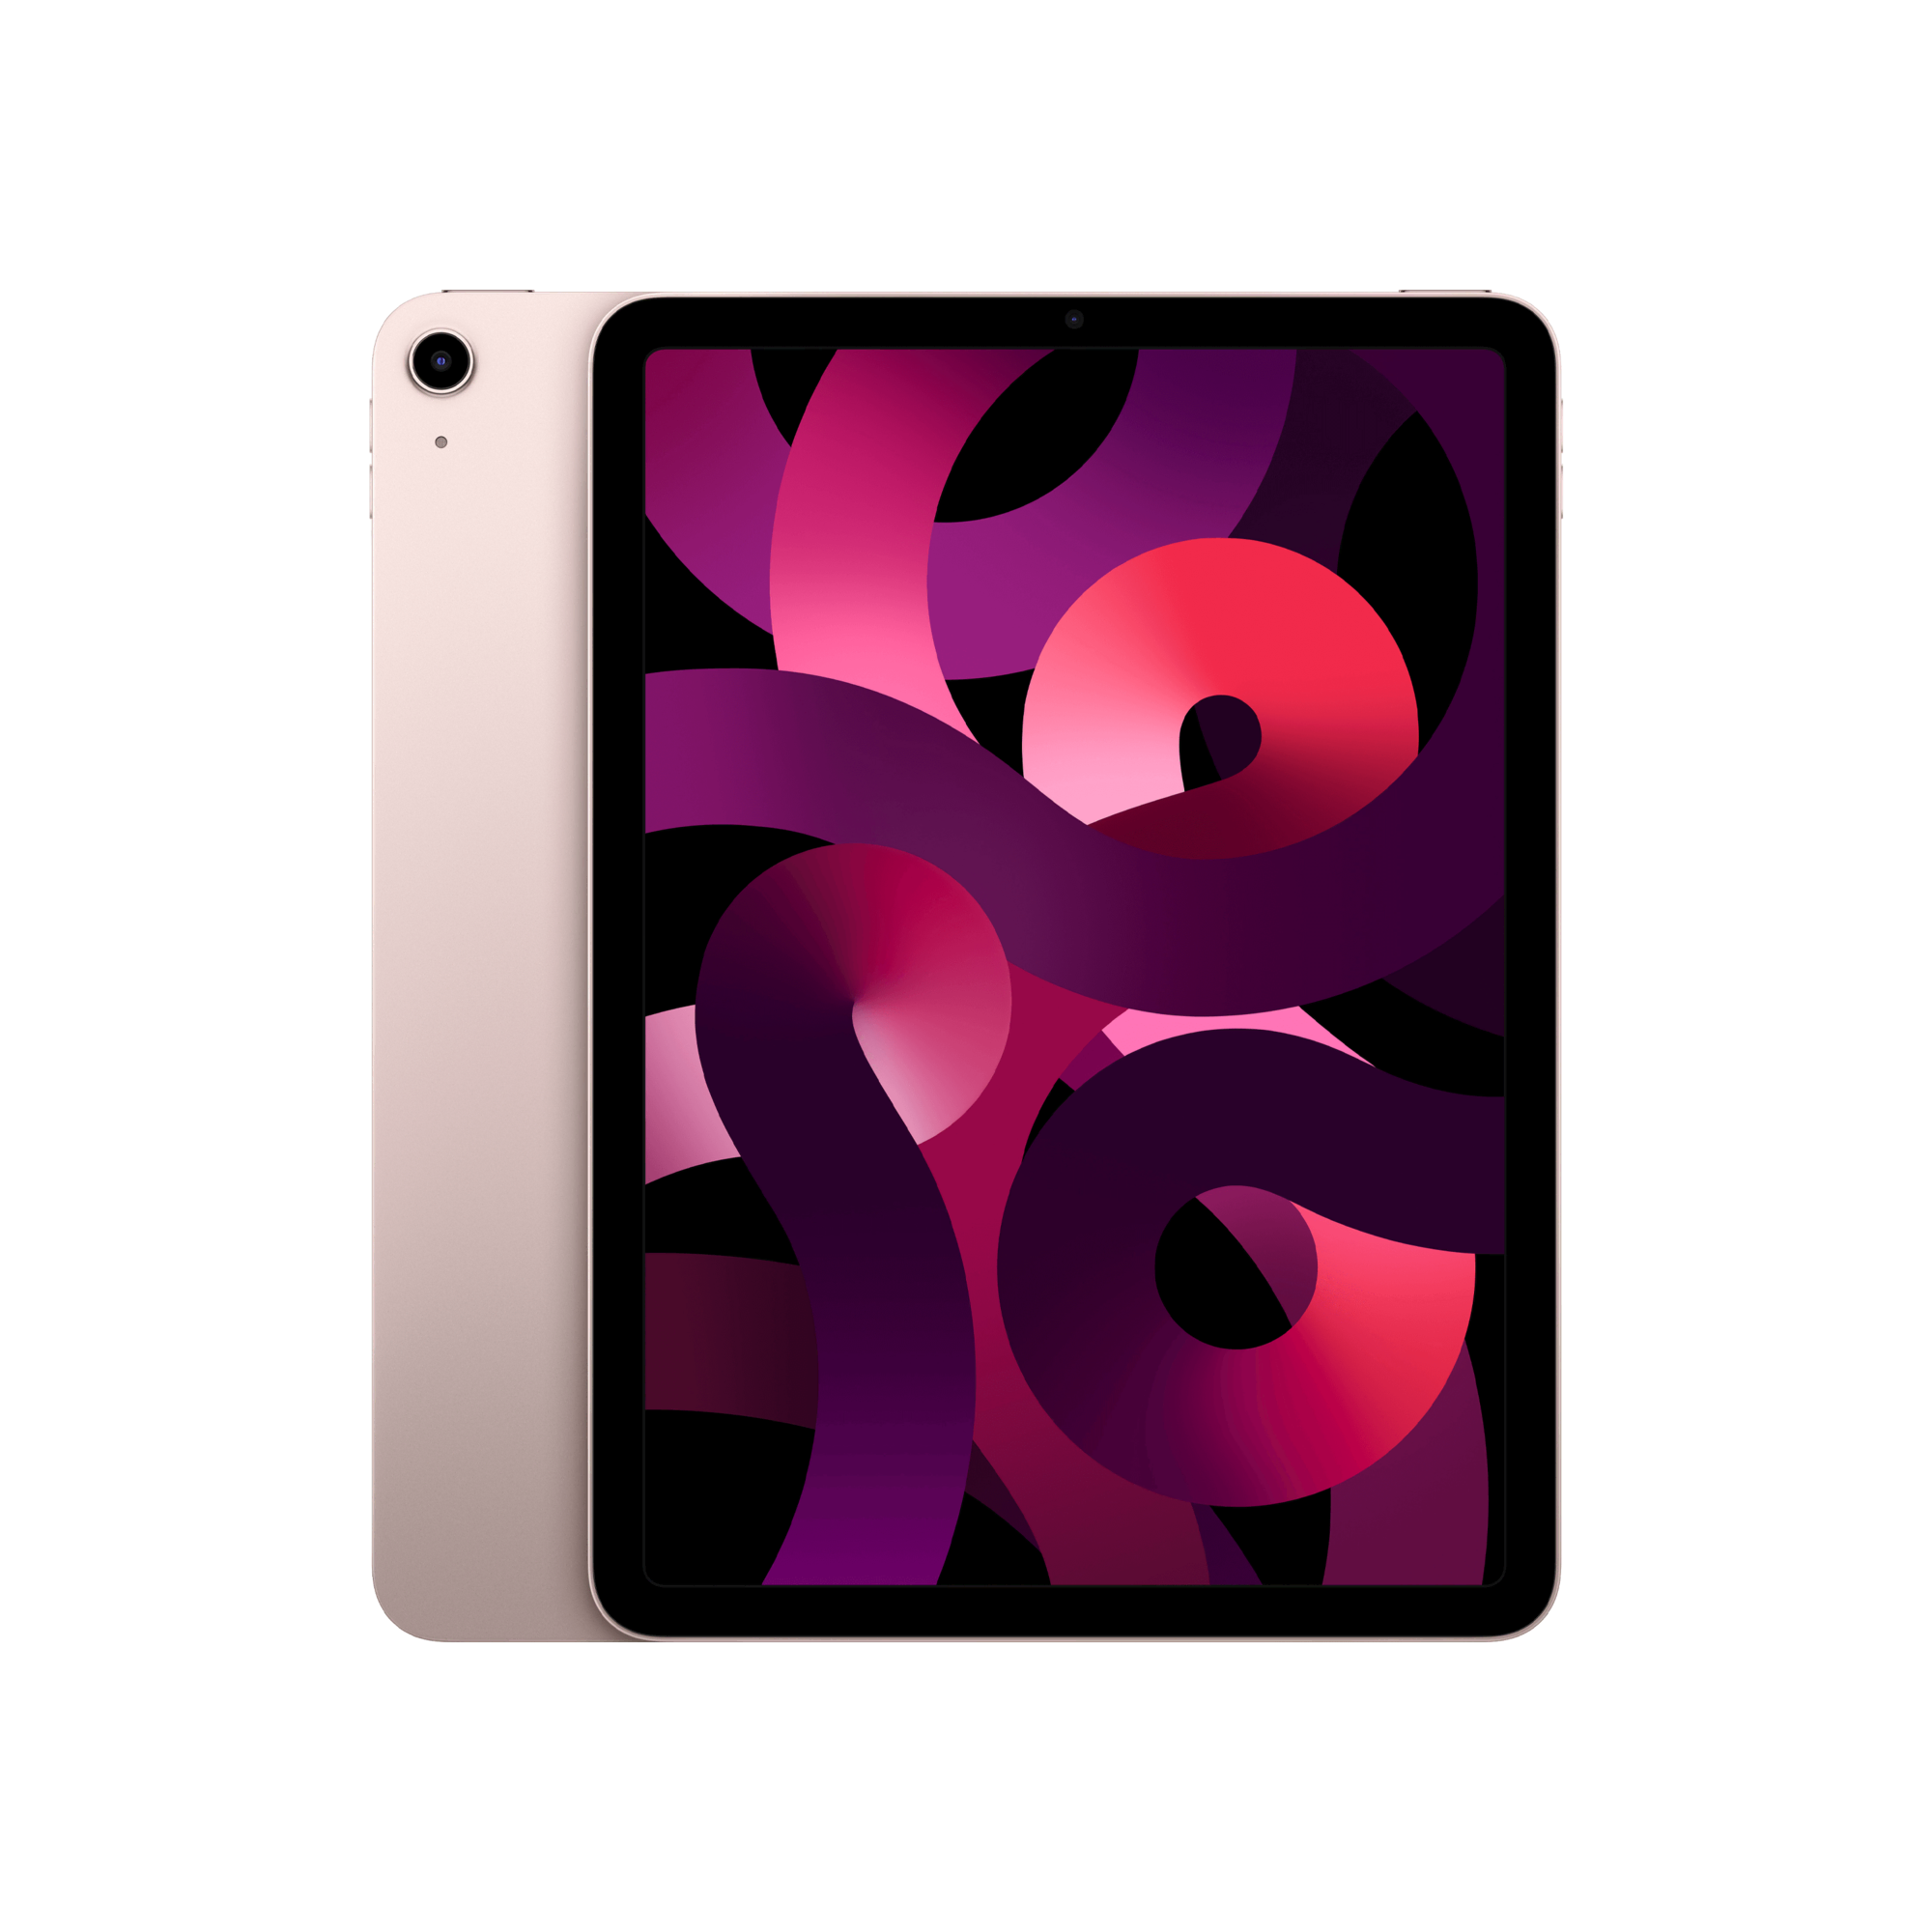 IPAD AIR WI-FI 64GB PINK Tablet